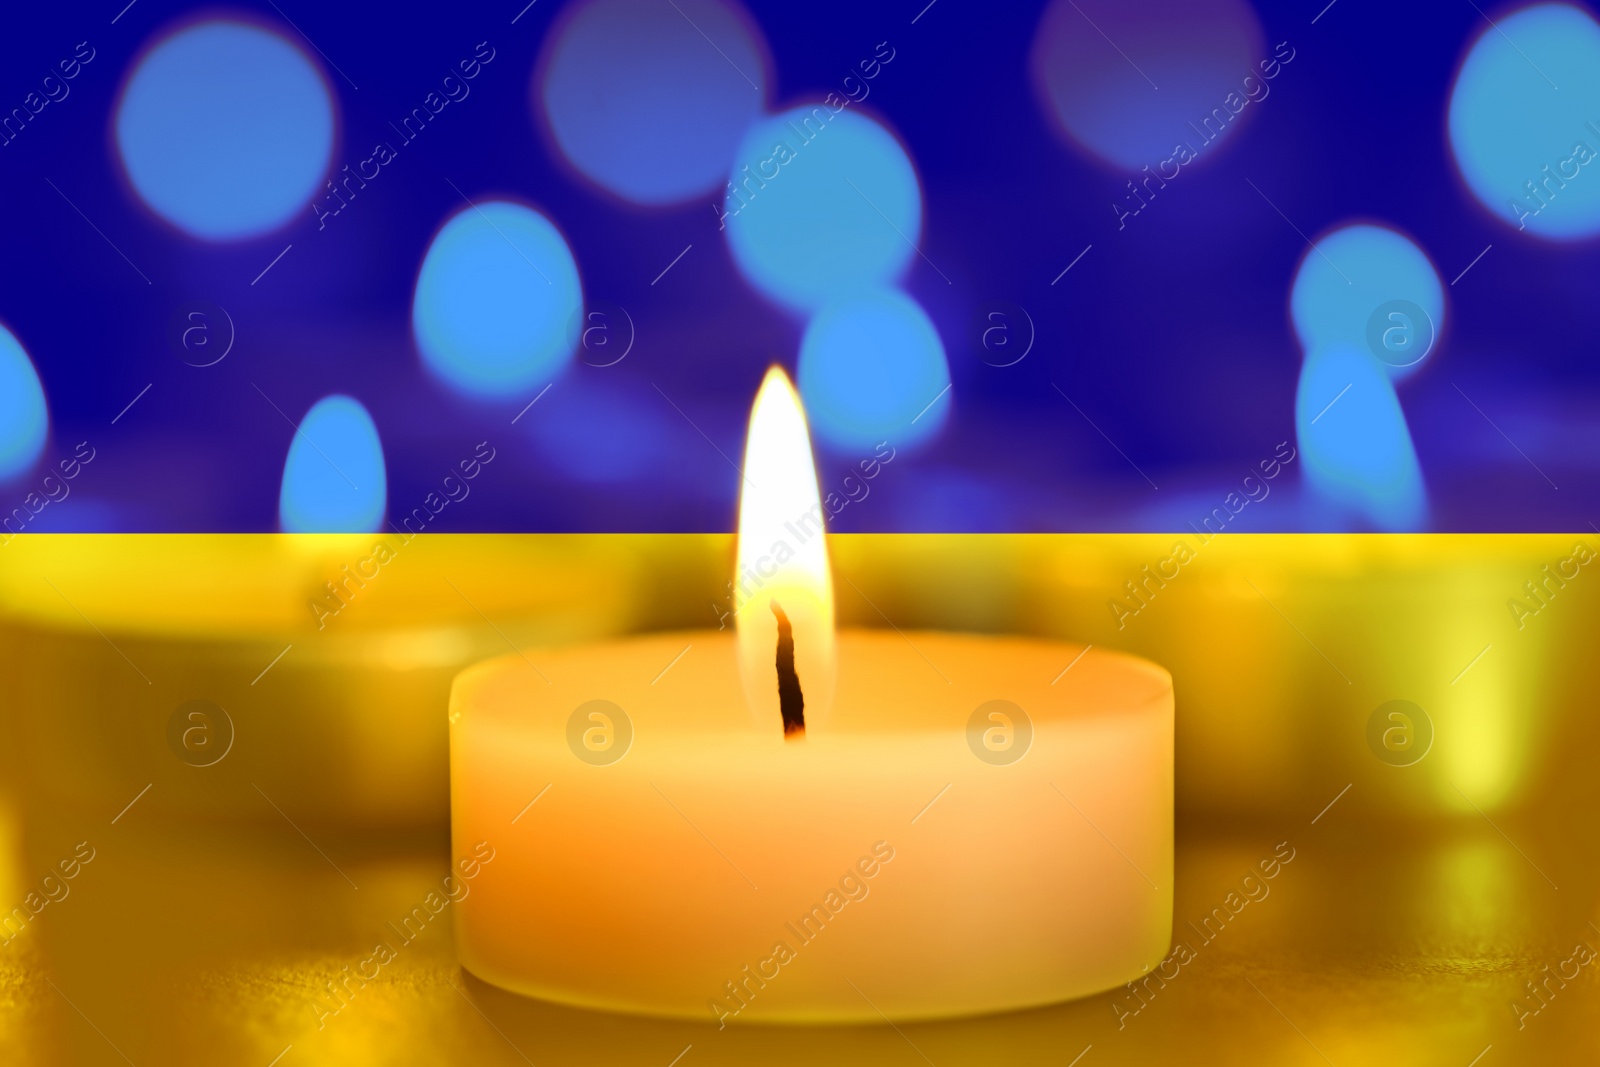 Image of Burning candle and Ukrainian national flag on background, closeup